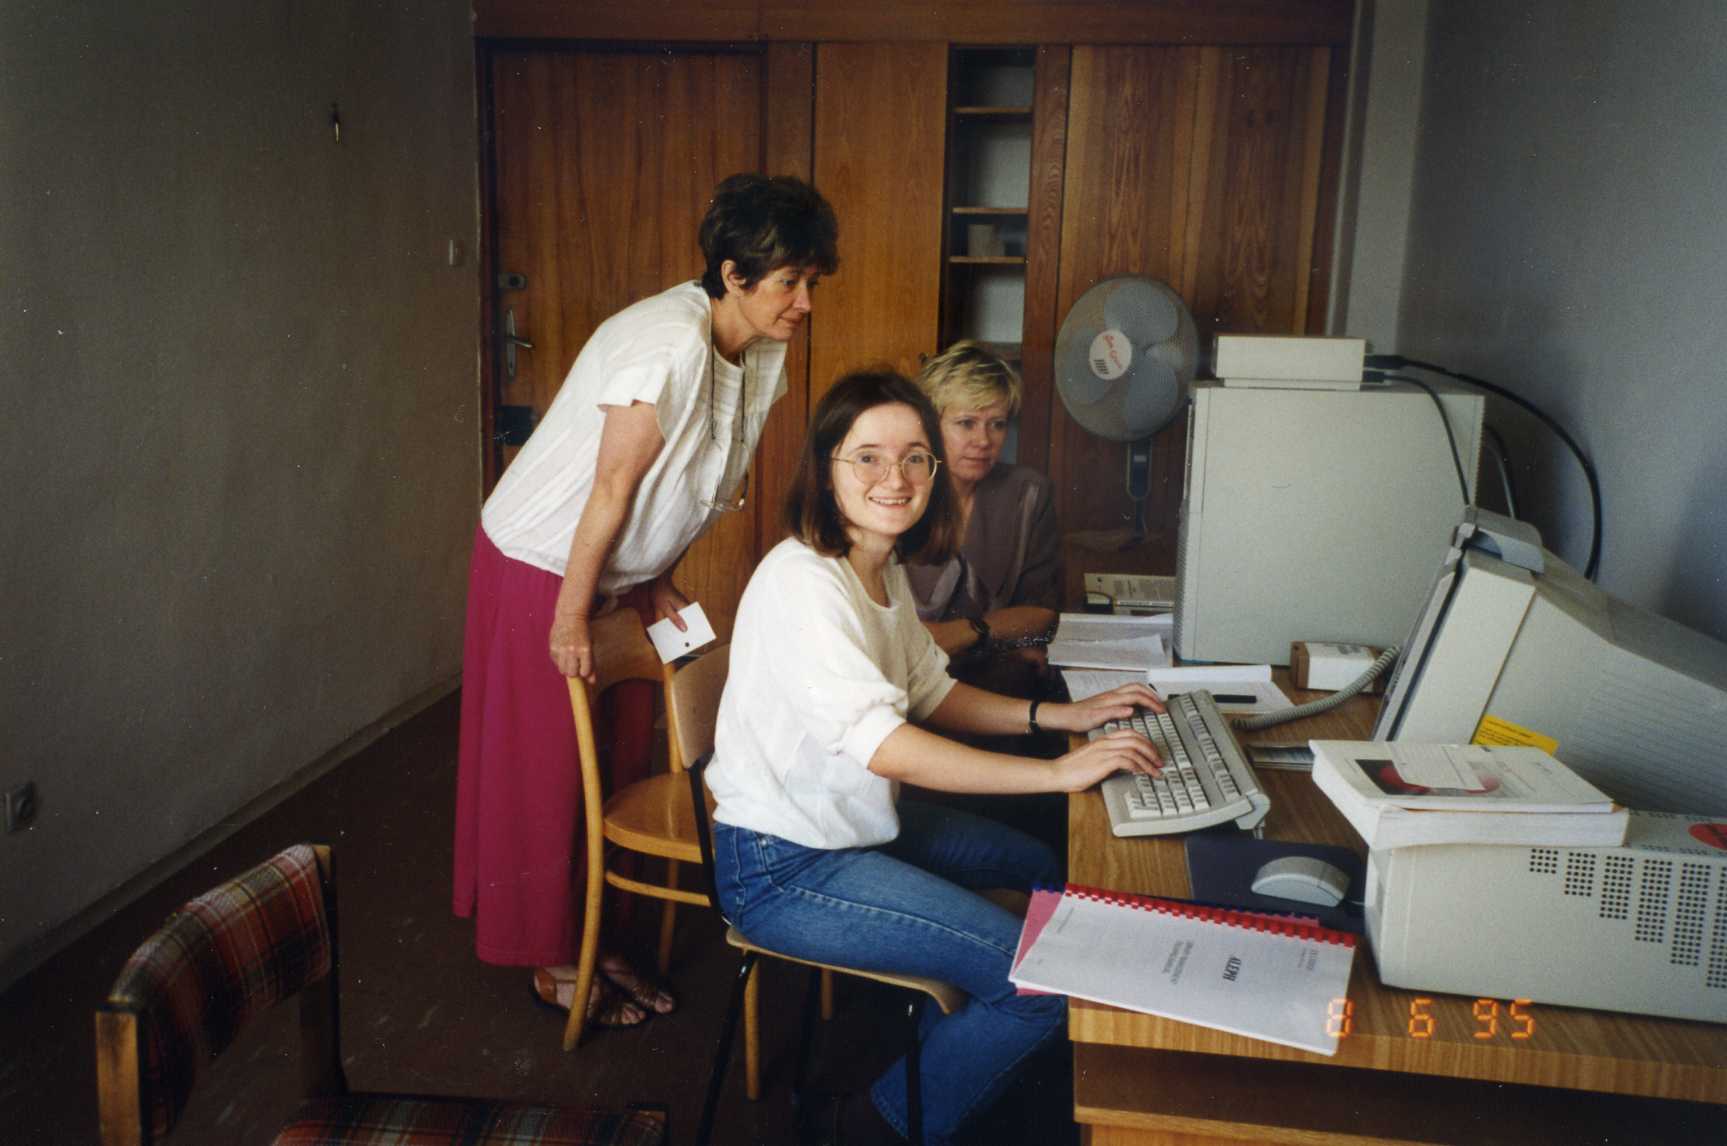 Pomieszczenie biurowe, pod lewą ścianą stoi biurko ze sprzętem komputerowym, dwie kobiety siedzą na krzesłach, a jedna stoi opierając się o poręcz krzesła, z tyłu na ścianie szafa i drzwi.